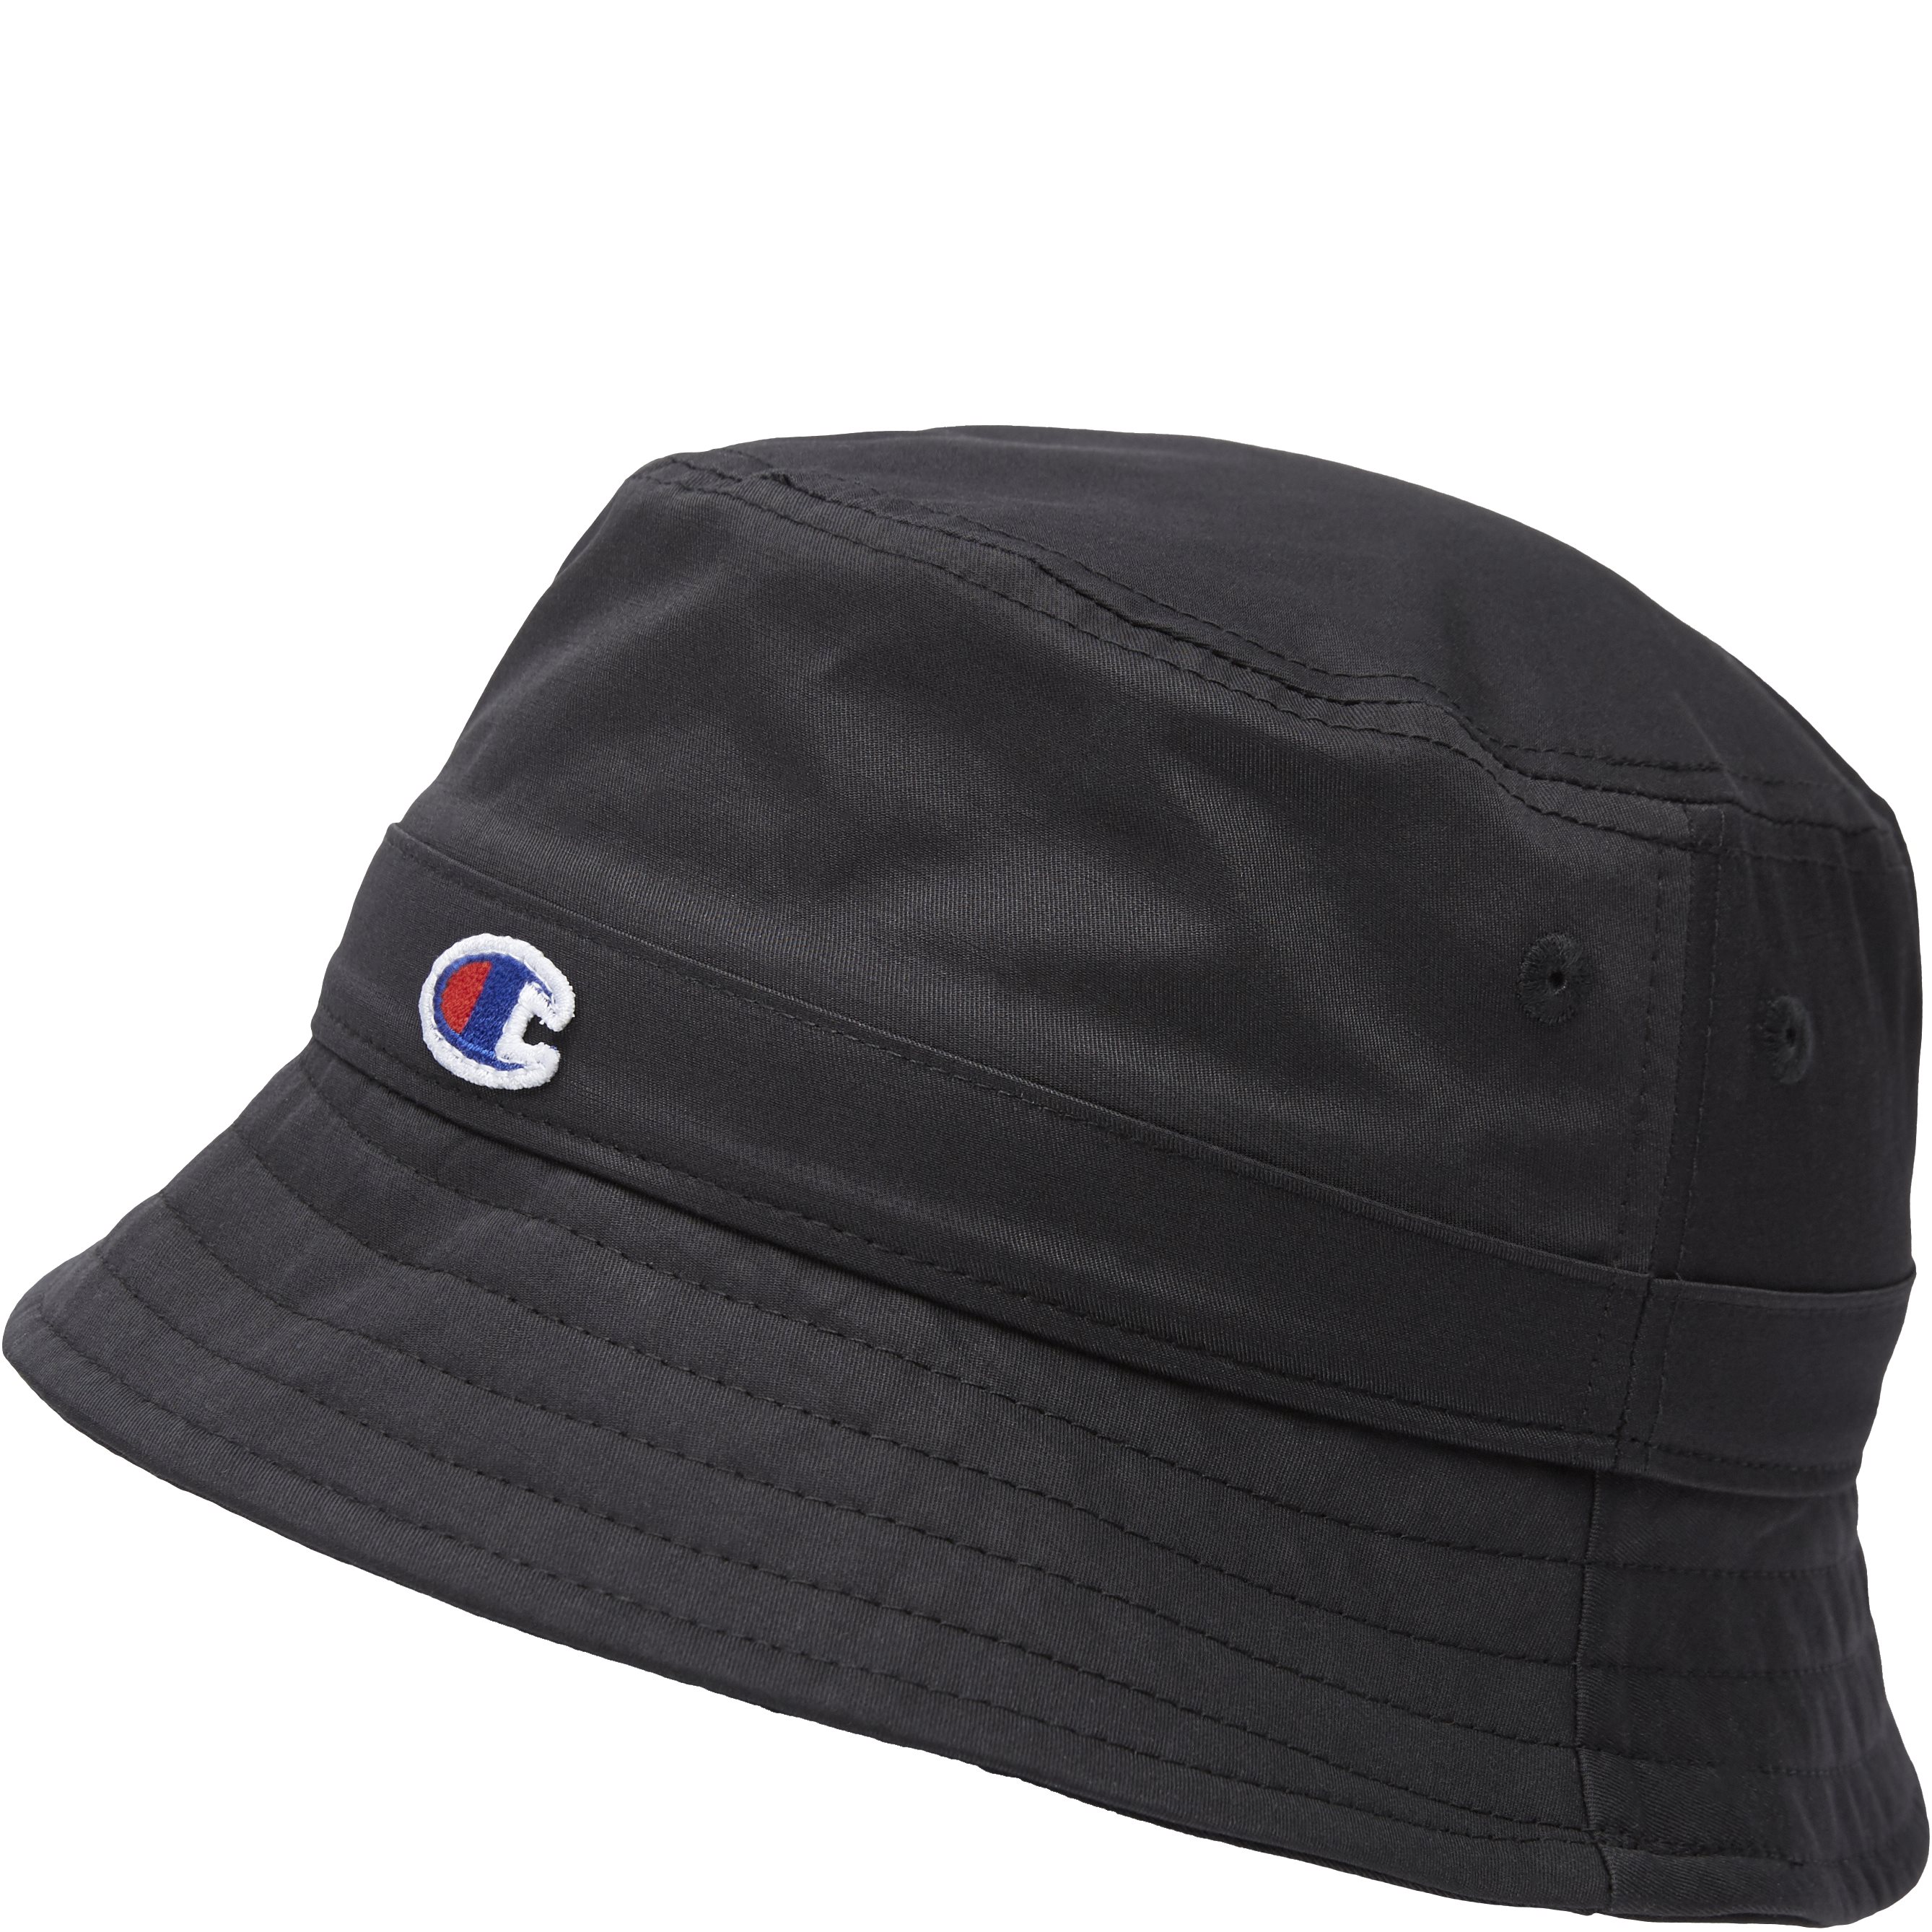 Bucket Cap - Hatte - Sort